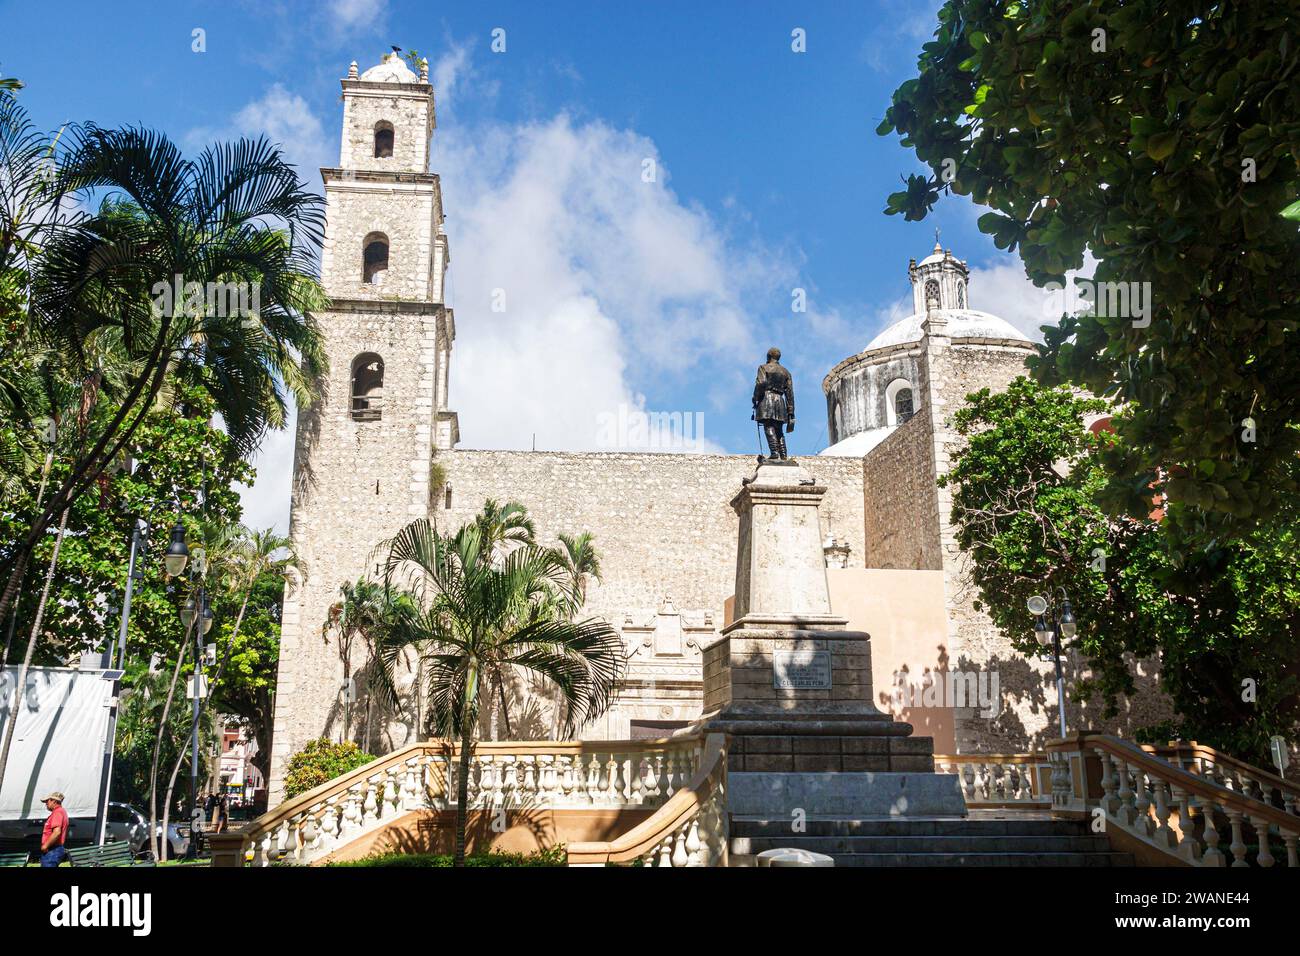 Merida Mexico, zentrales historisches Zentrum, das Pfarrhaus Jesus Dritter Ordnung, Kirche Iglesia de Rectoria, Calle 60, Außenfassade, Gebäude f Stockfoto